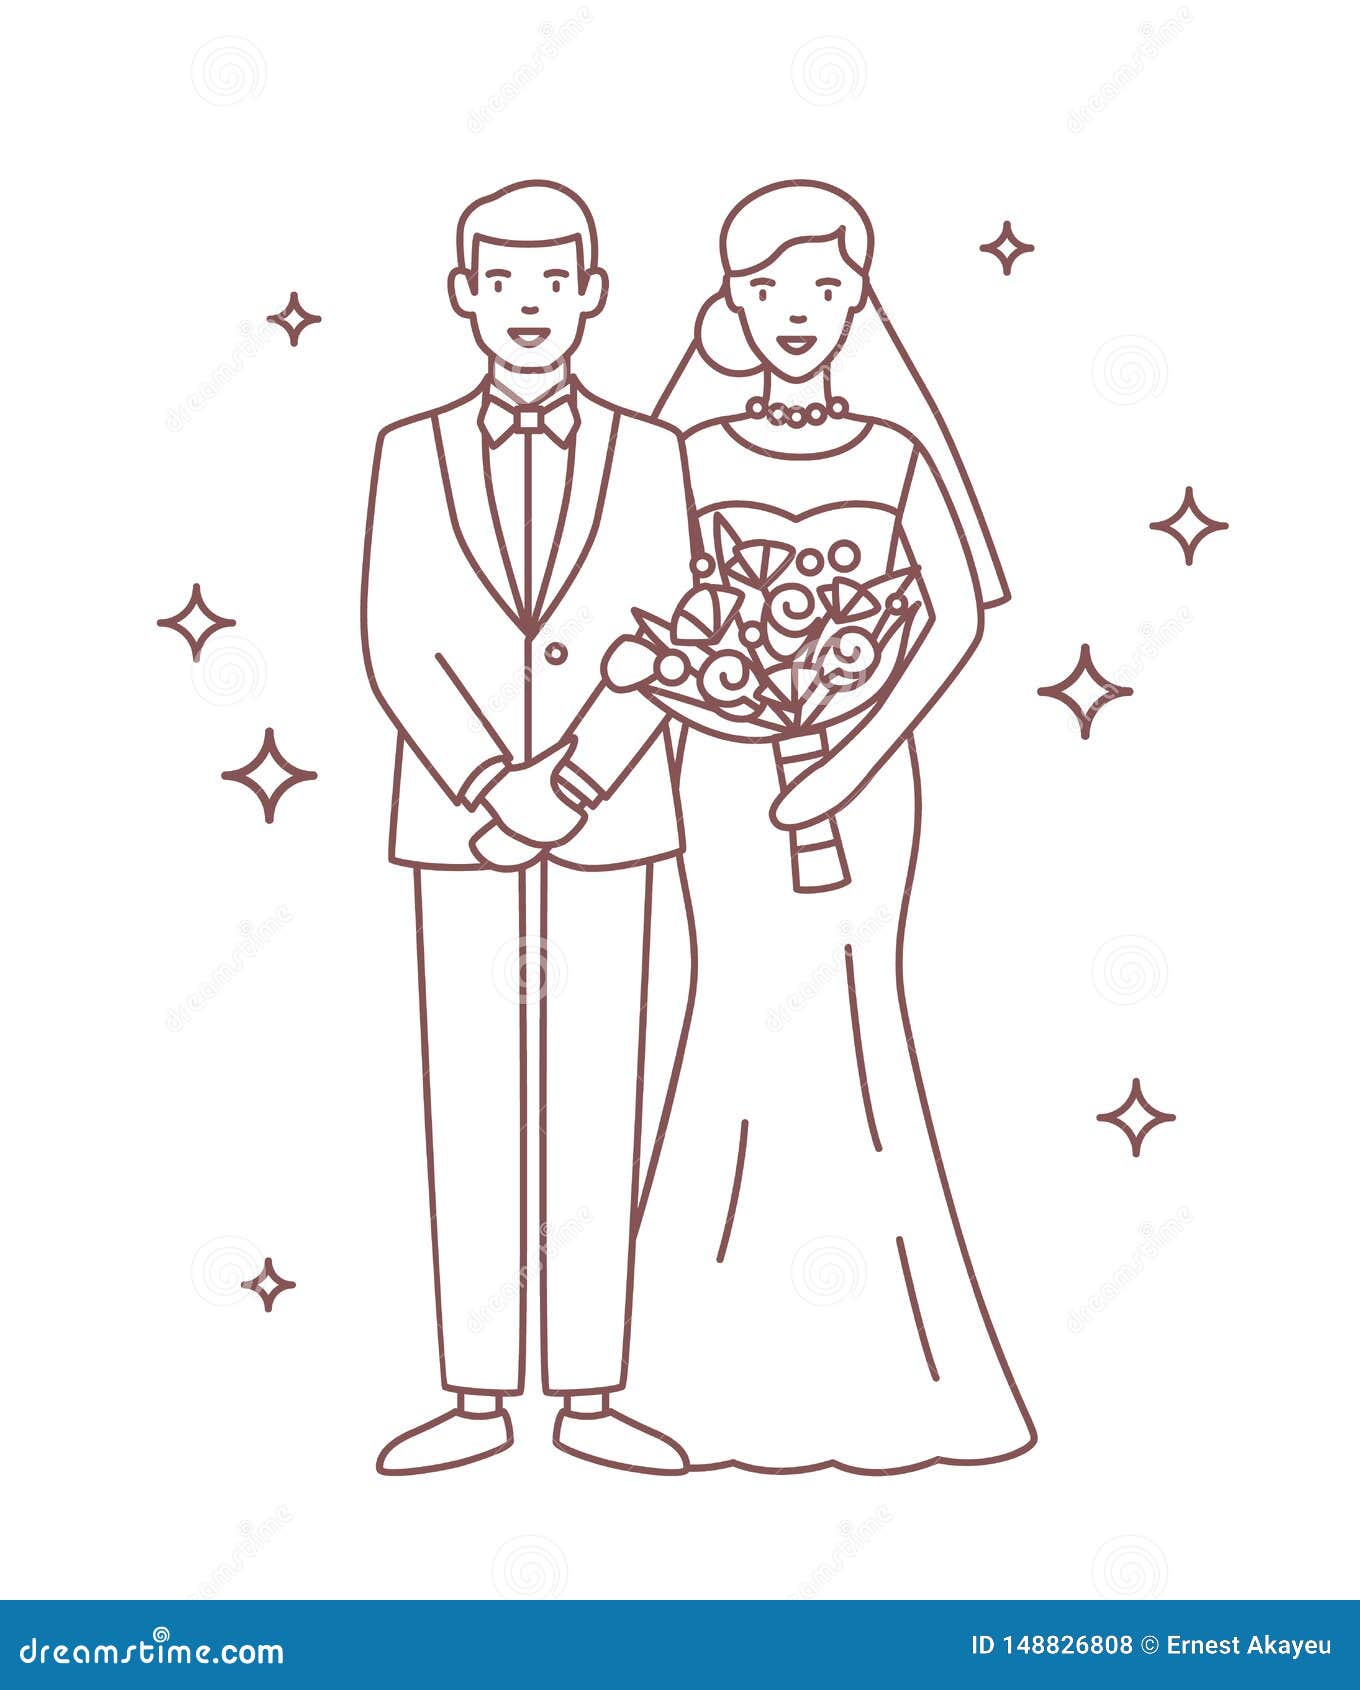 Карикатура рисунок невеста и жених карандашом для срисовки